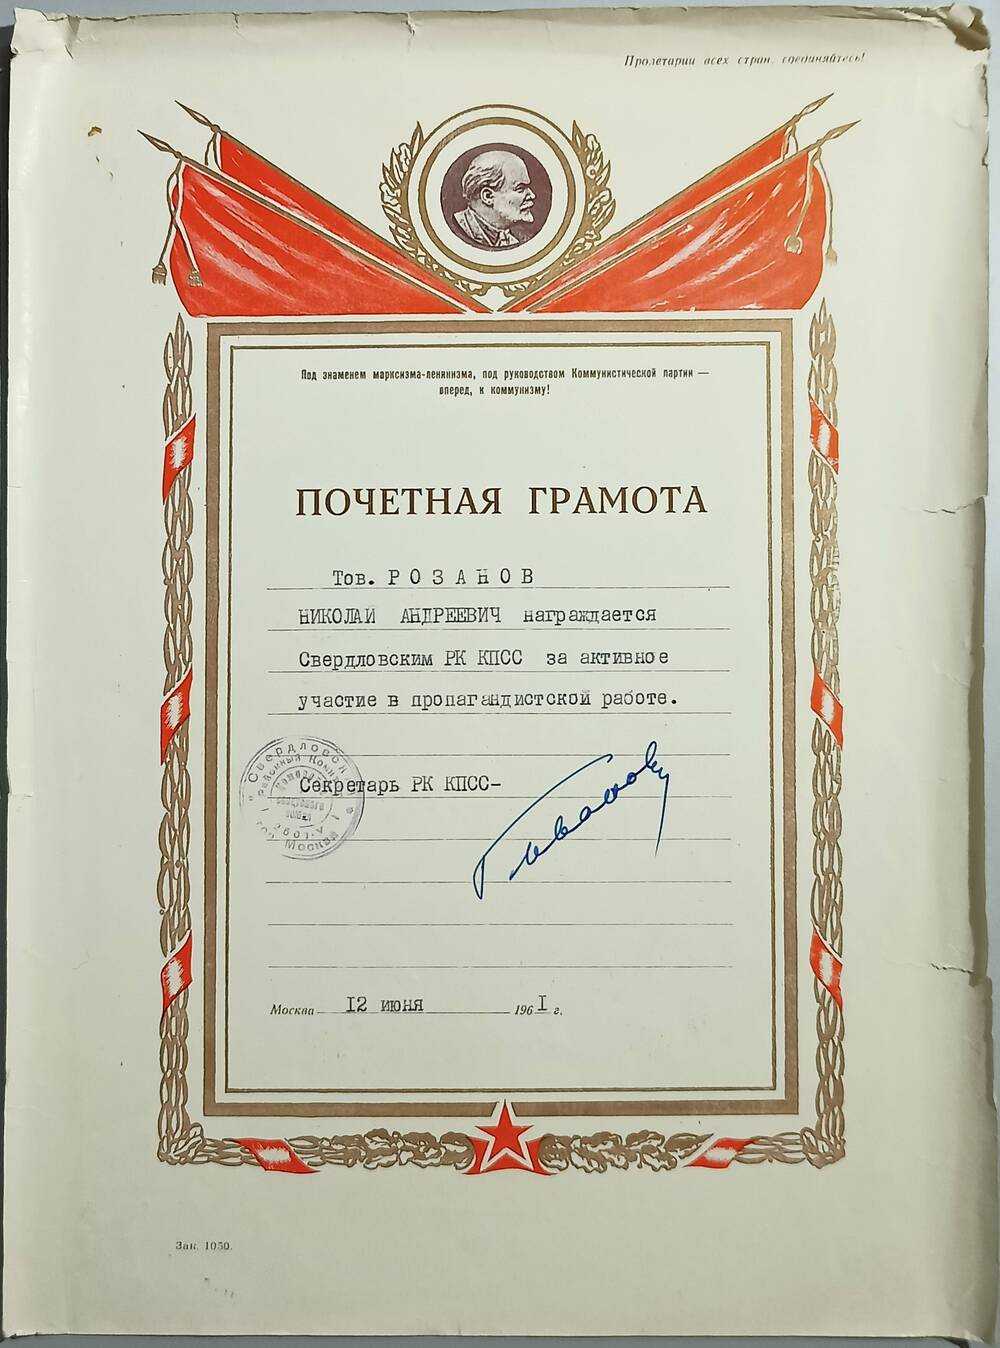 Почетная грамота Свердловского РК КПСС - Розанову Н.А. за активное участие в пропагандистской работе. 12 июня 1961 г.